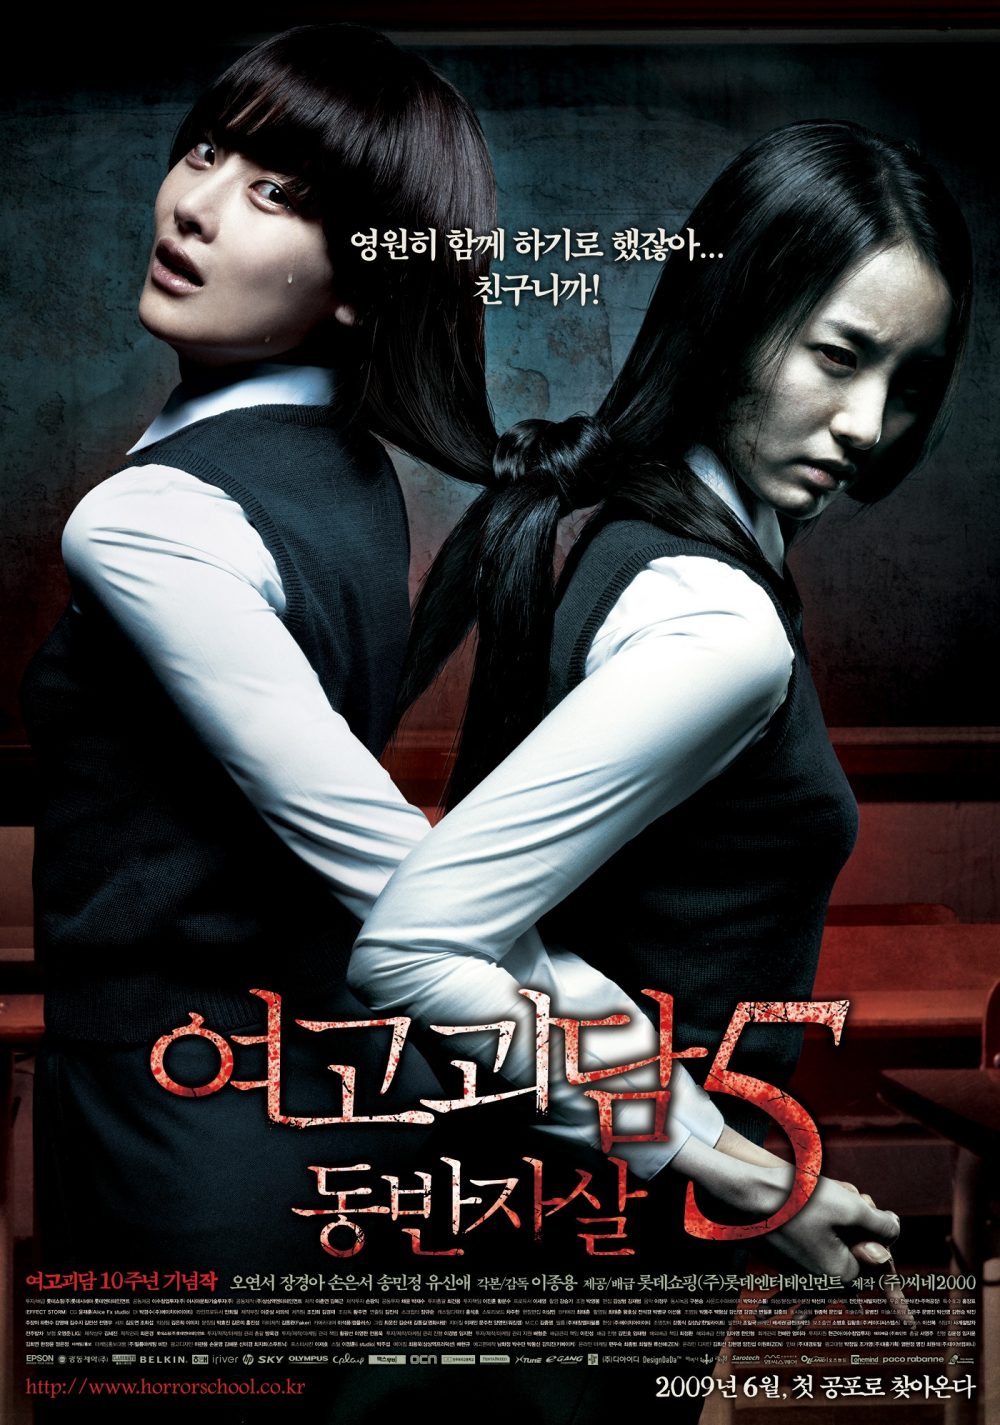 Phim yêu tinh kinh dị Nước Hàn hoặc nhất từng thời đại: Hành thầy thuốc thì âm thầm - Whispering Corridors (1998)